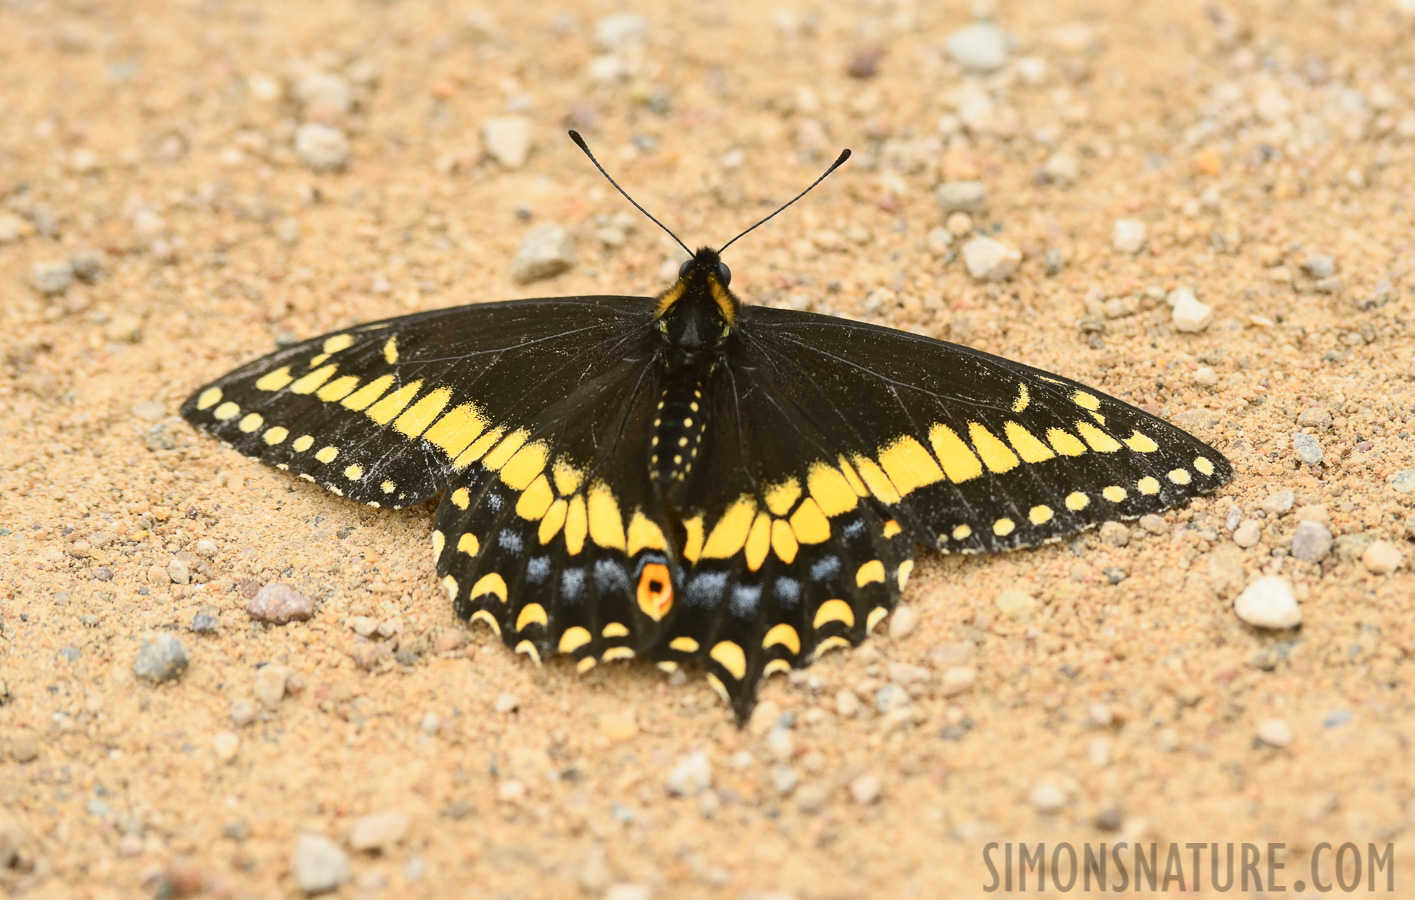 Papilio brevicauda [400 mm, 1/800 sec at f / 8.0, ISO 1600]